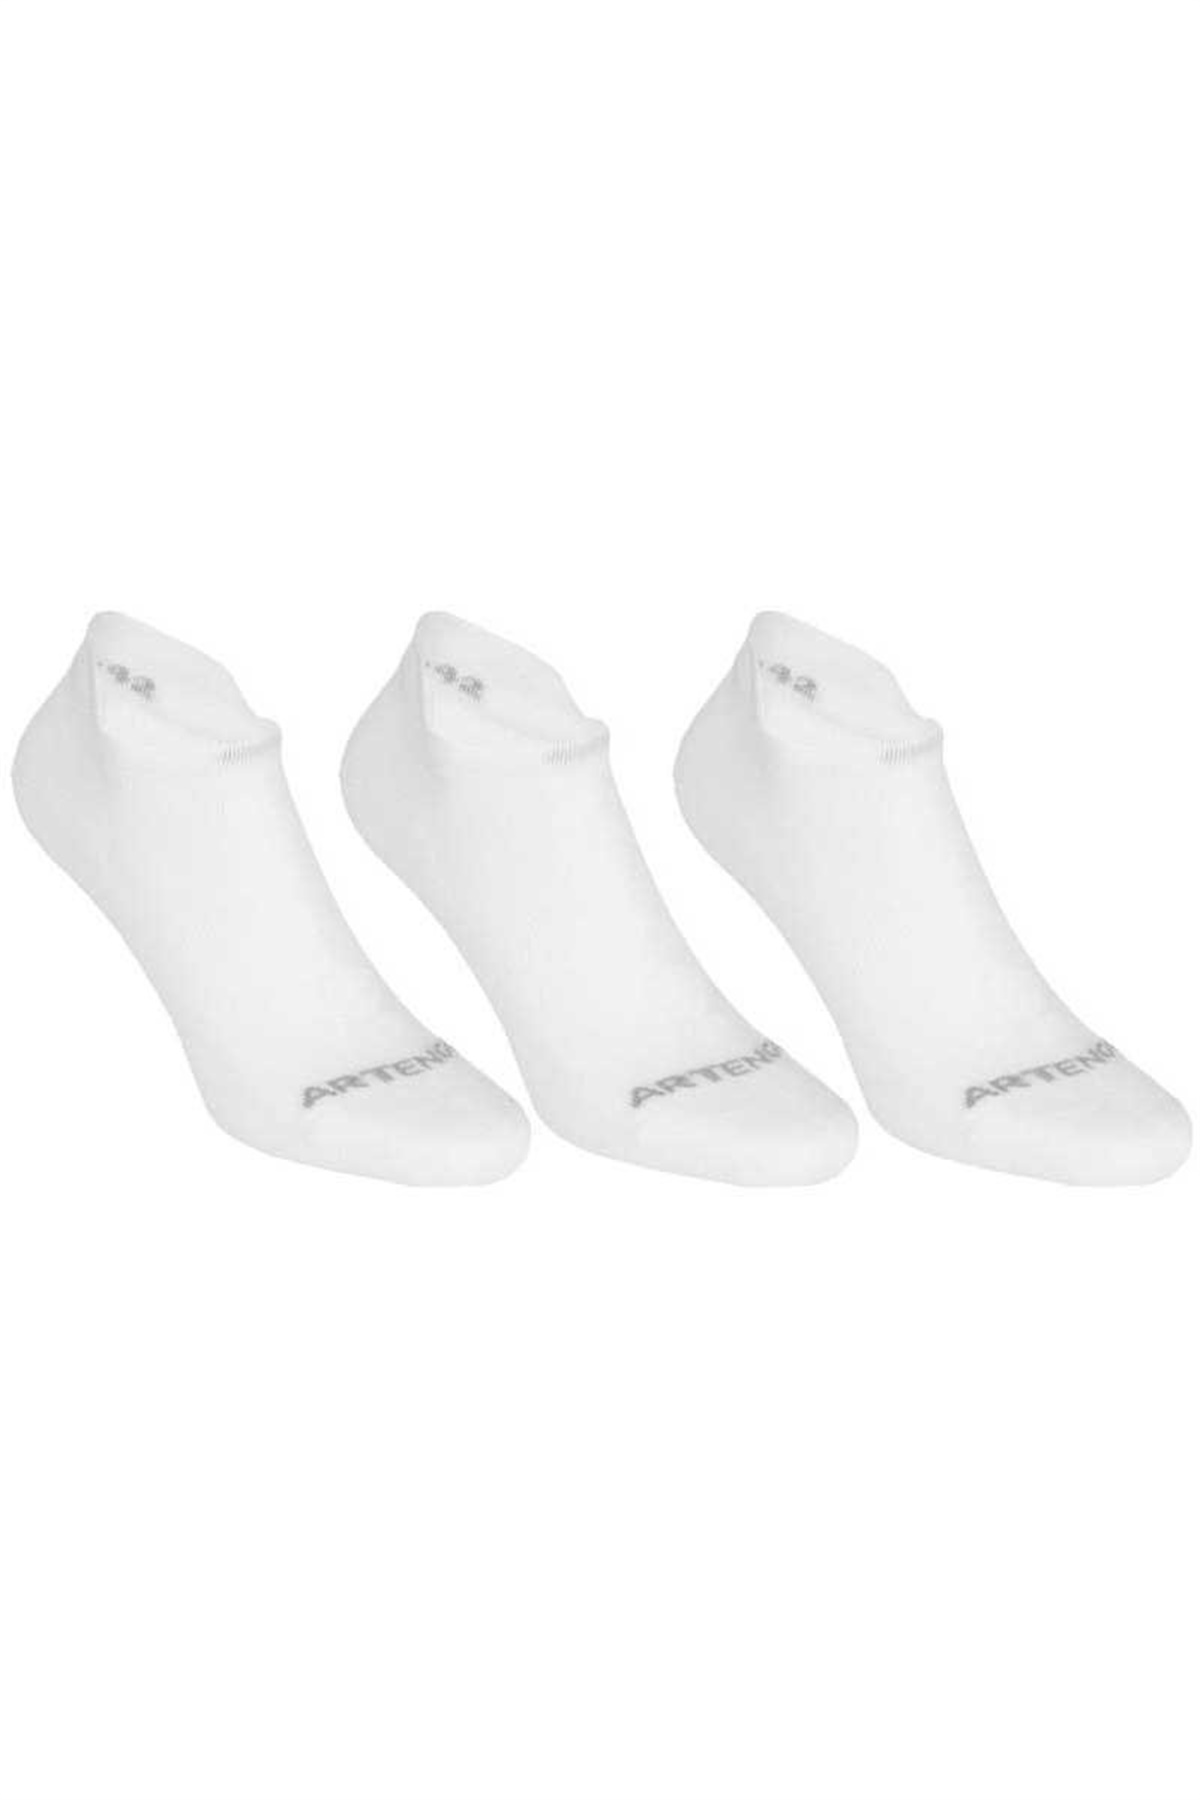 Beyaz Spor Çorabı, Sporcu Çorabı  C1144-1